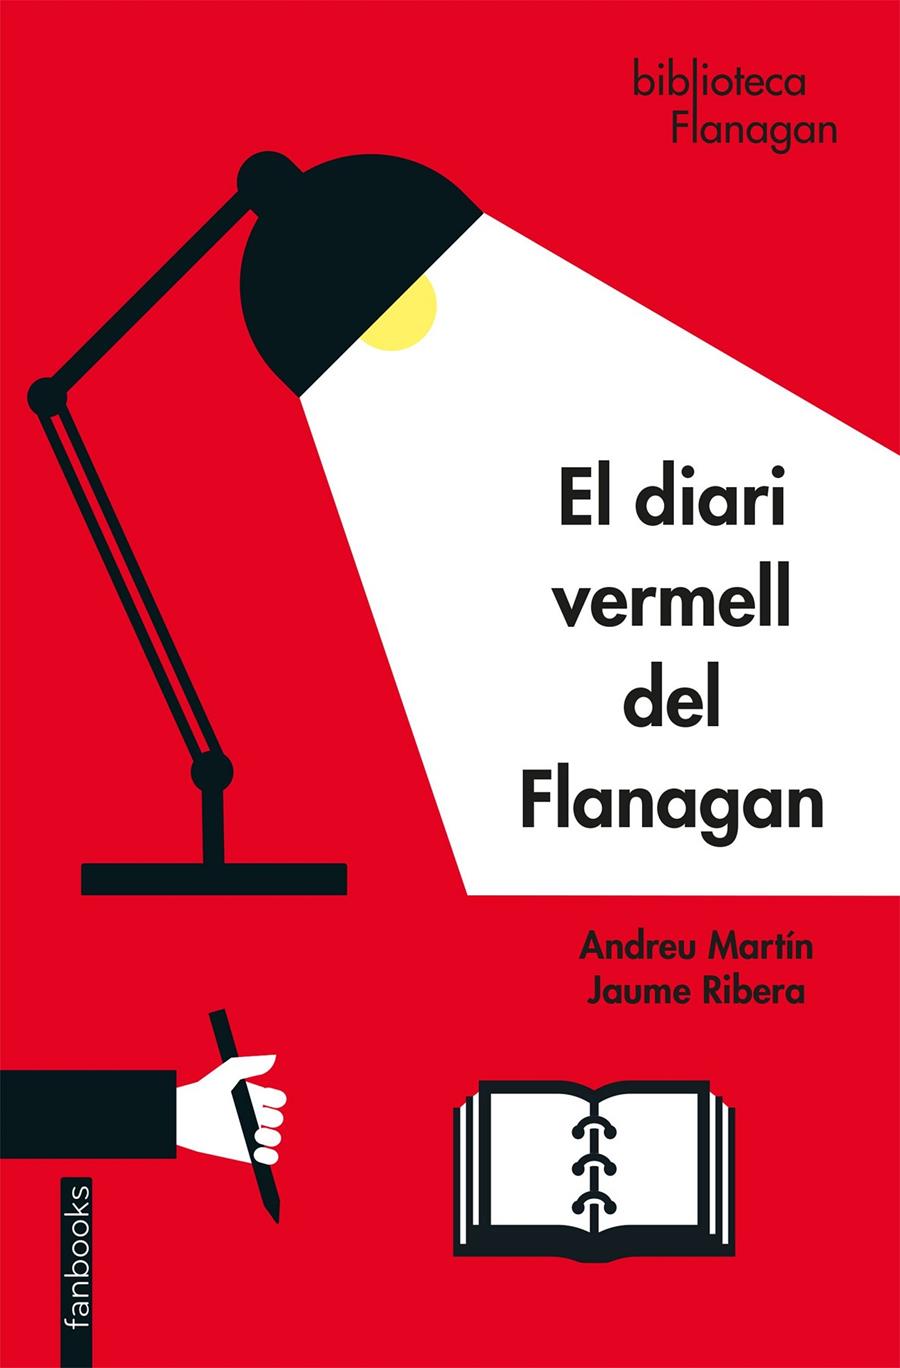 El diari vermell del Flanagan | Martín, Andreu/Ribera, Jaume | Cooperativa autogestionària